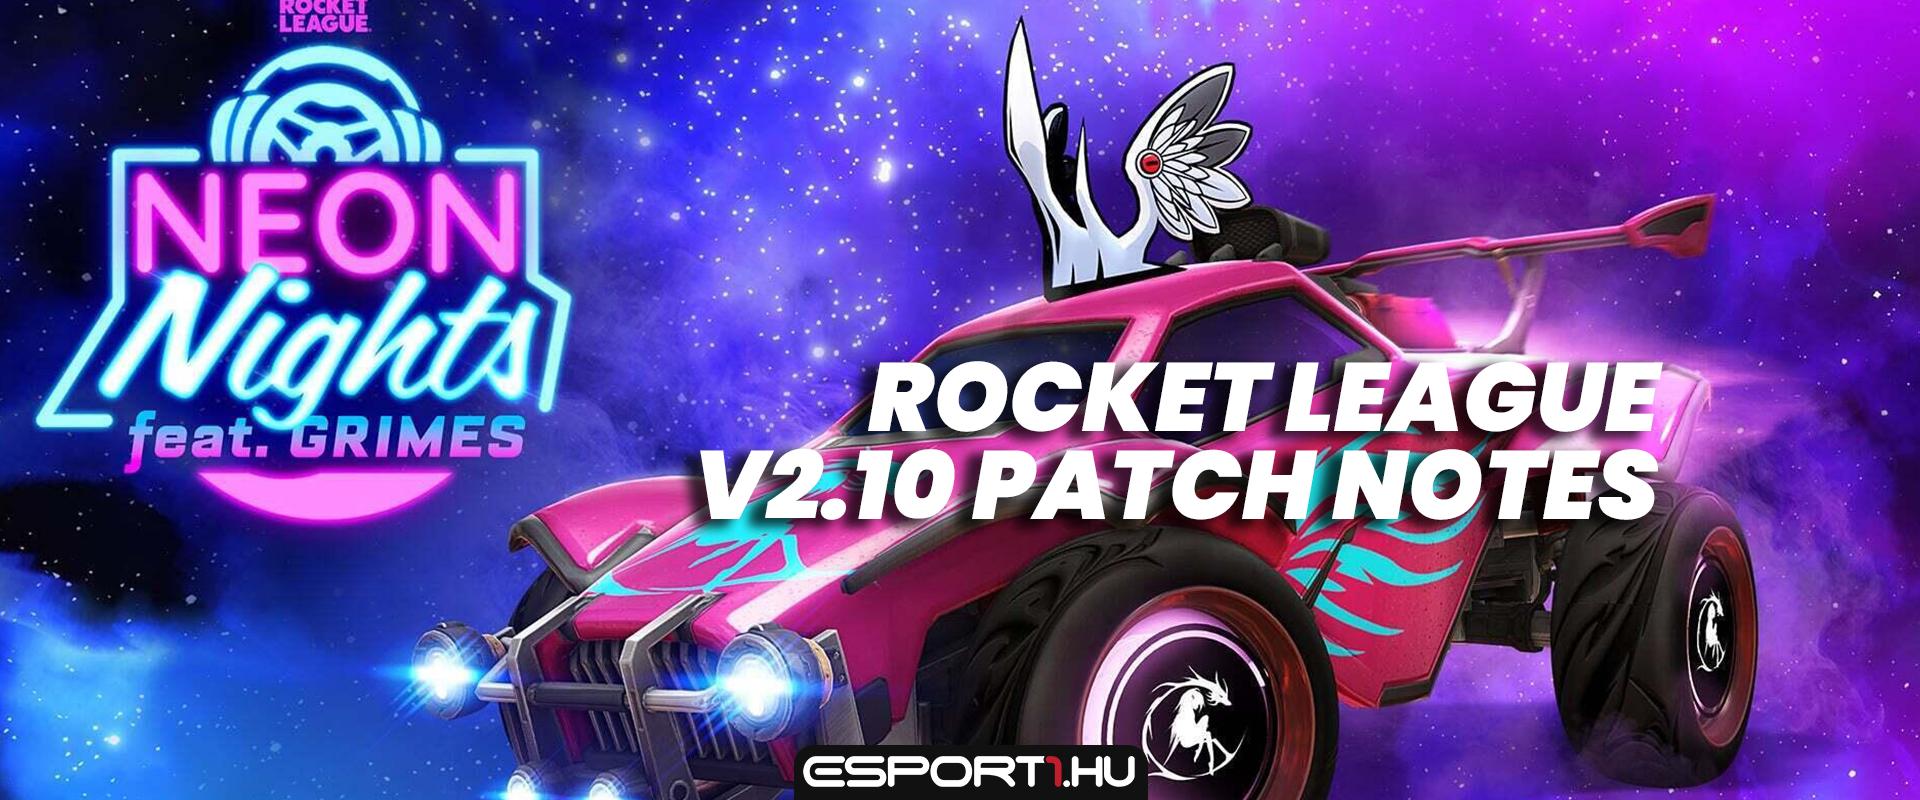 Rocket League: Érkezik a Neon Nights eseménye, beszerezhetőek az új e-sport decalok – v2.10 patch notes